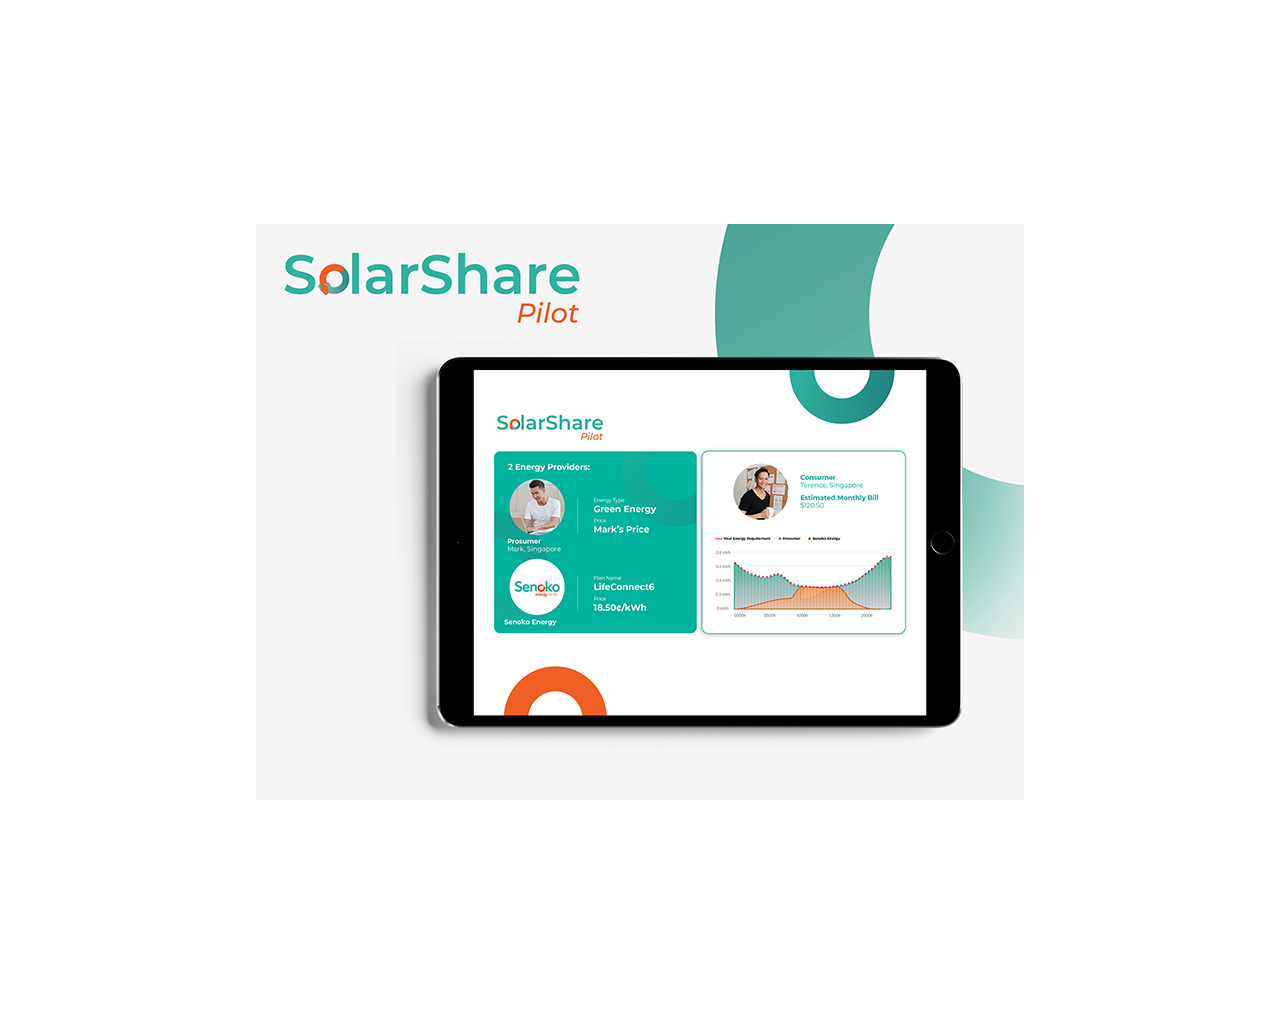 Registration for SolarShare Pilot